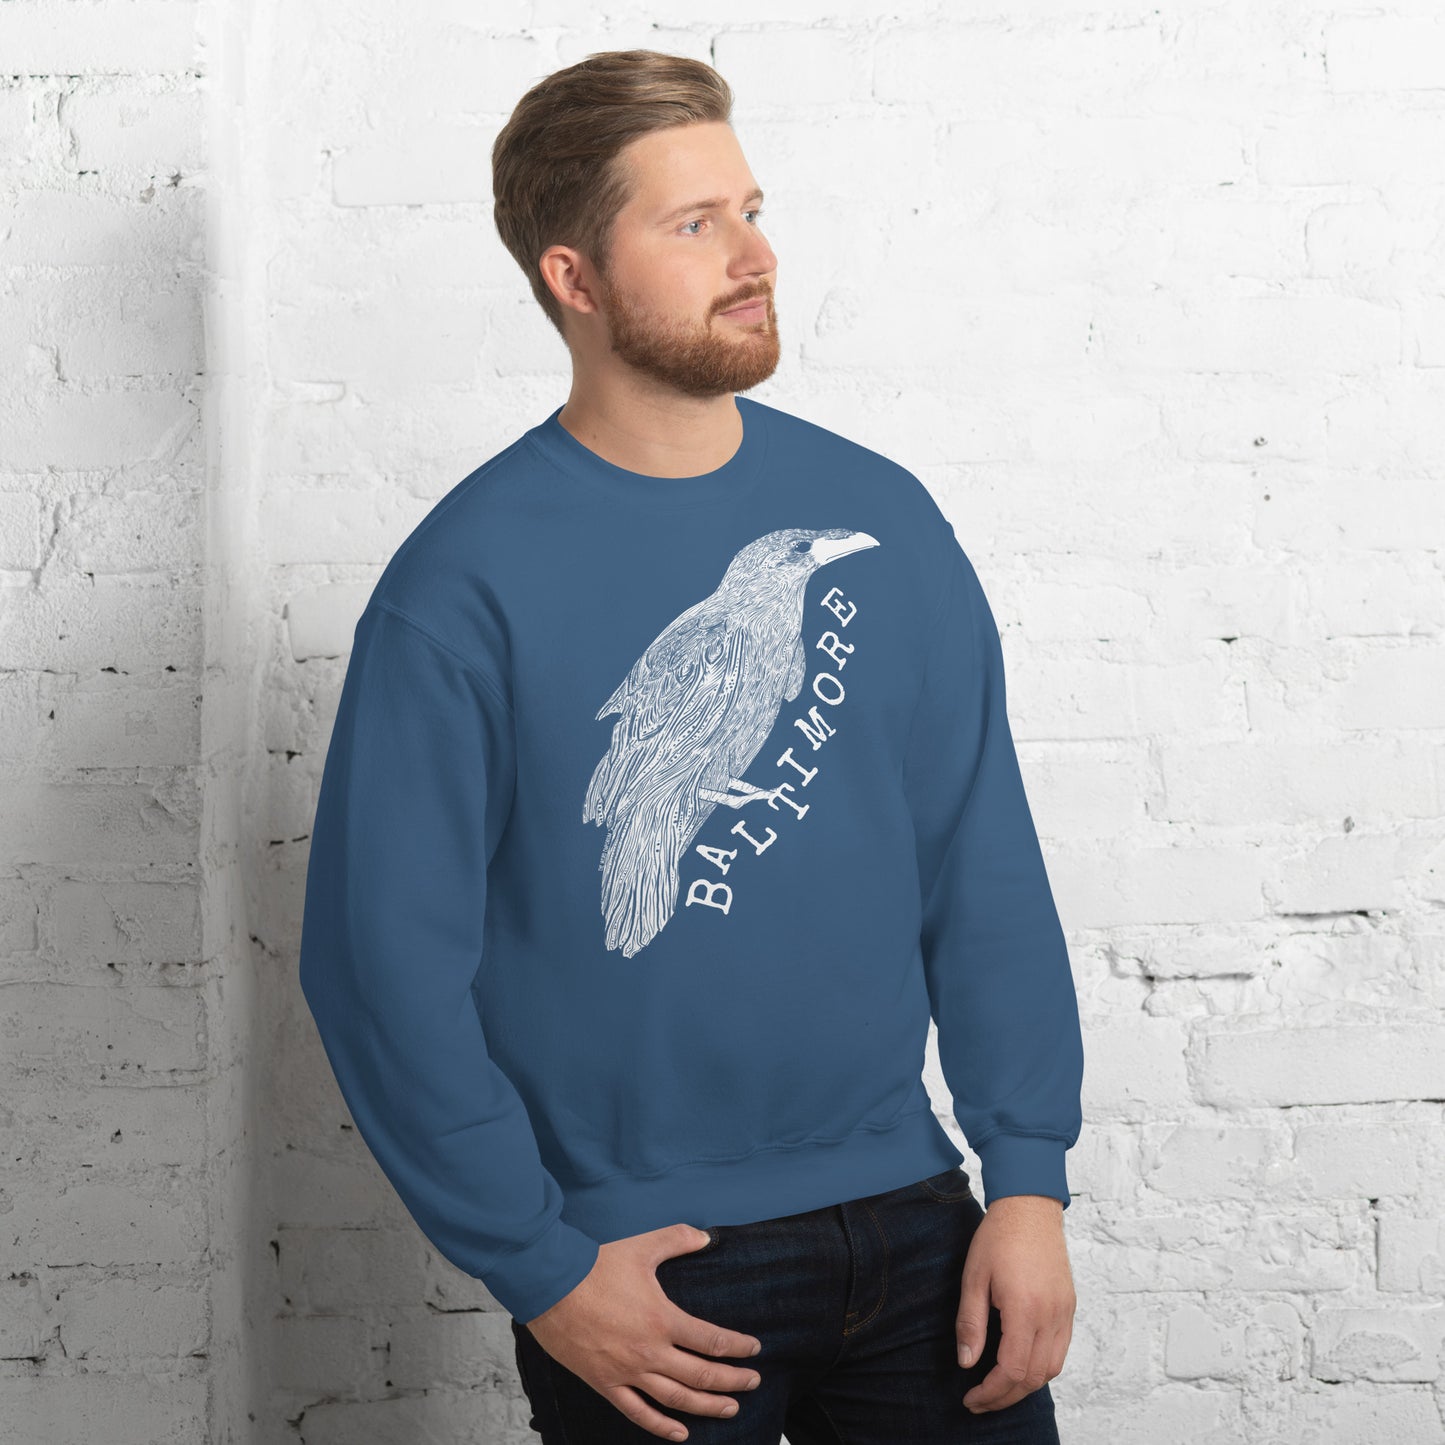 Ravens Baltimore Sweatshirt